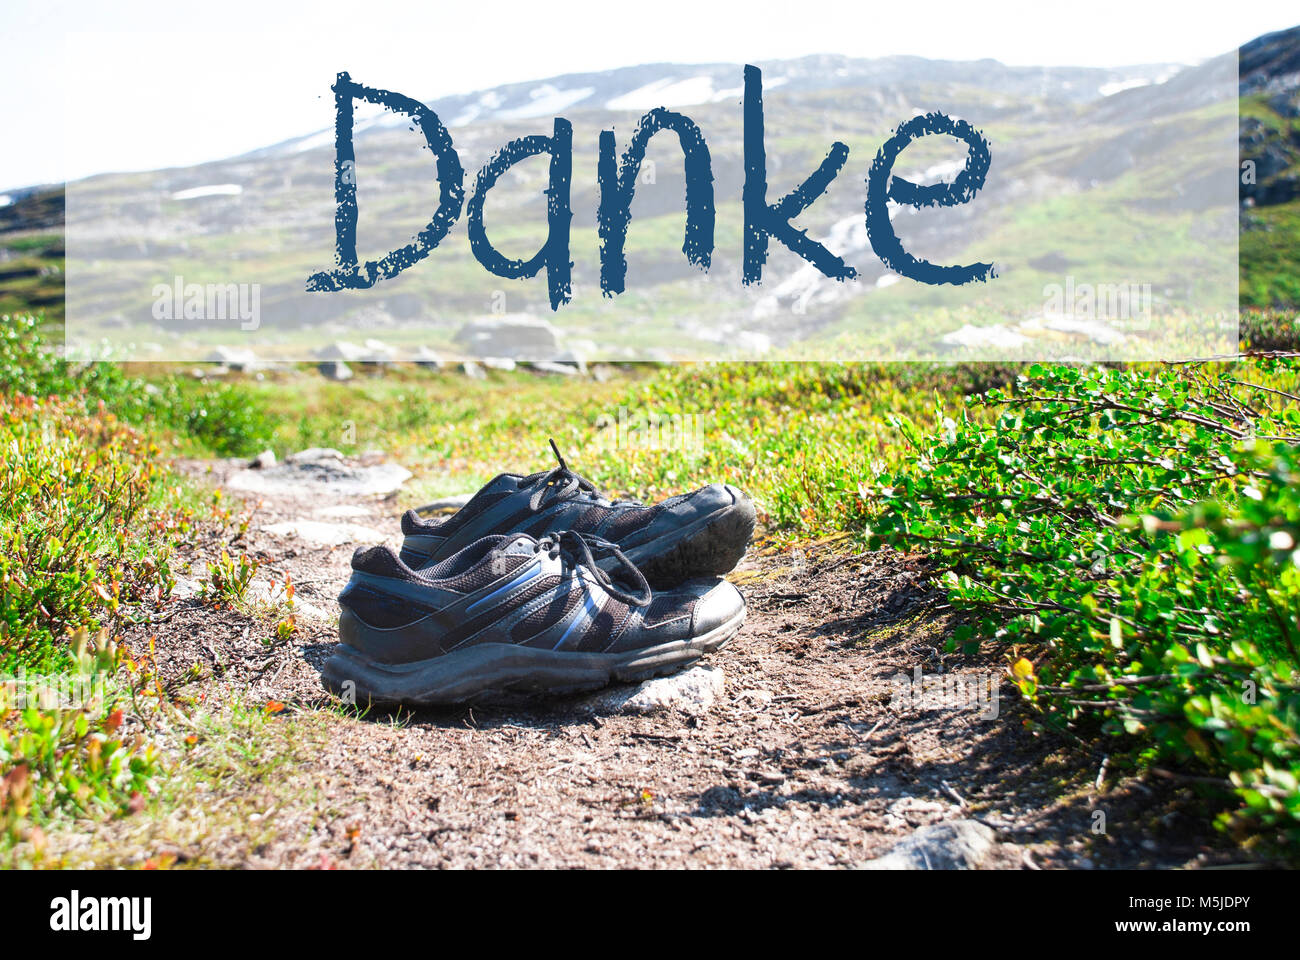 Texte allemand Danke veut dire merci. Chaussures de marche sur un chemin de  randonnée en Norvège. Montagnes en arrière-plan Photo Stock - Alamy